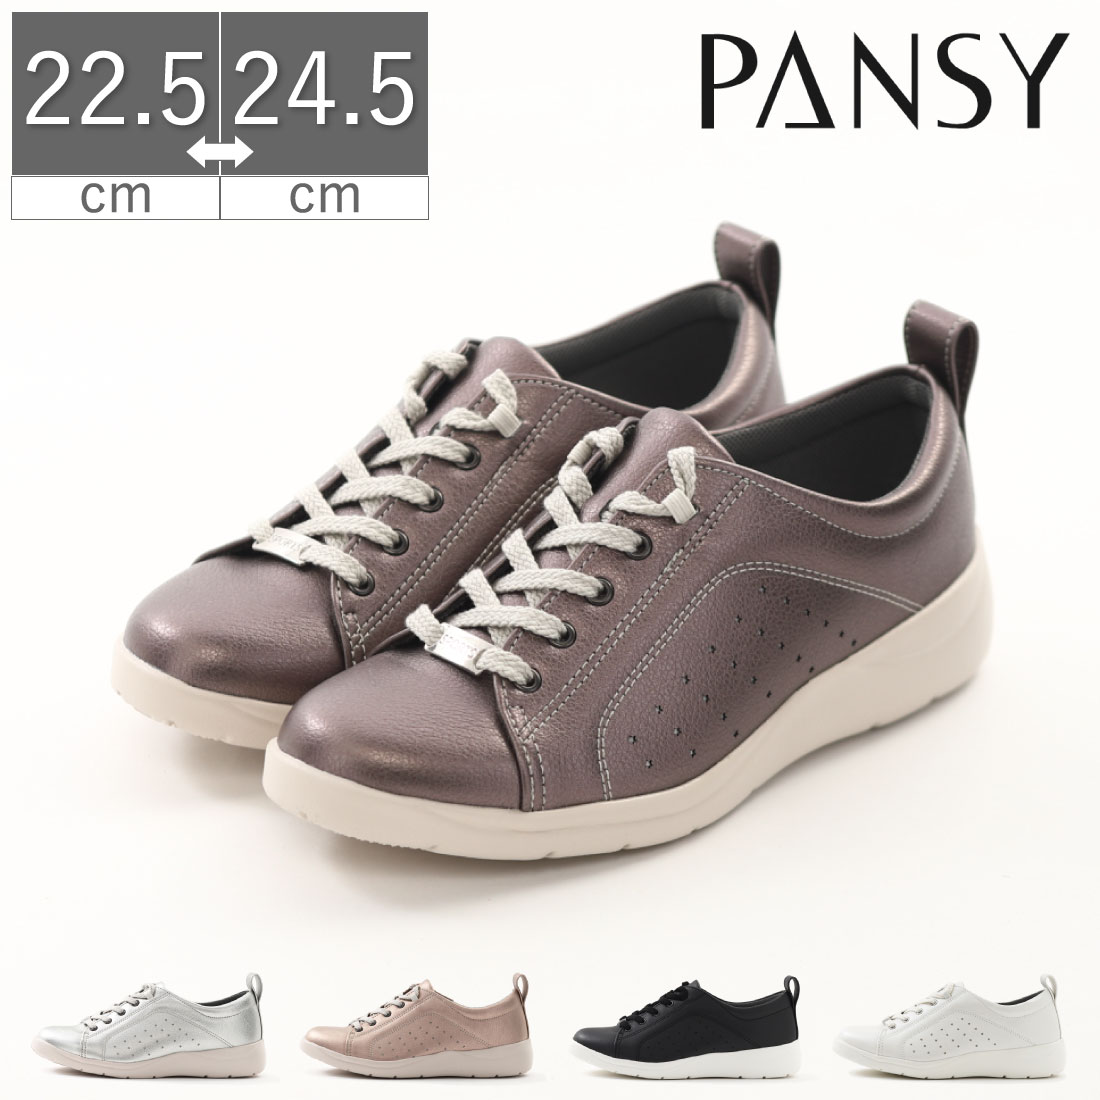  パンジー Pansy レディース スニーカー カジュアルシューズ PS1376 3E 幅広 婦人靴 軽量 脱ぎ履きラクラク シルバー ピンク ブラック ホワイト 黒 白